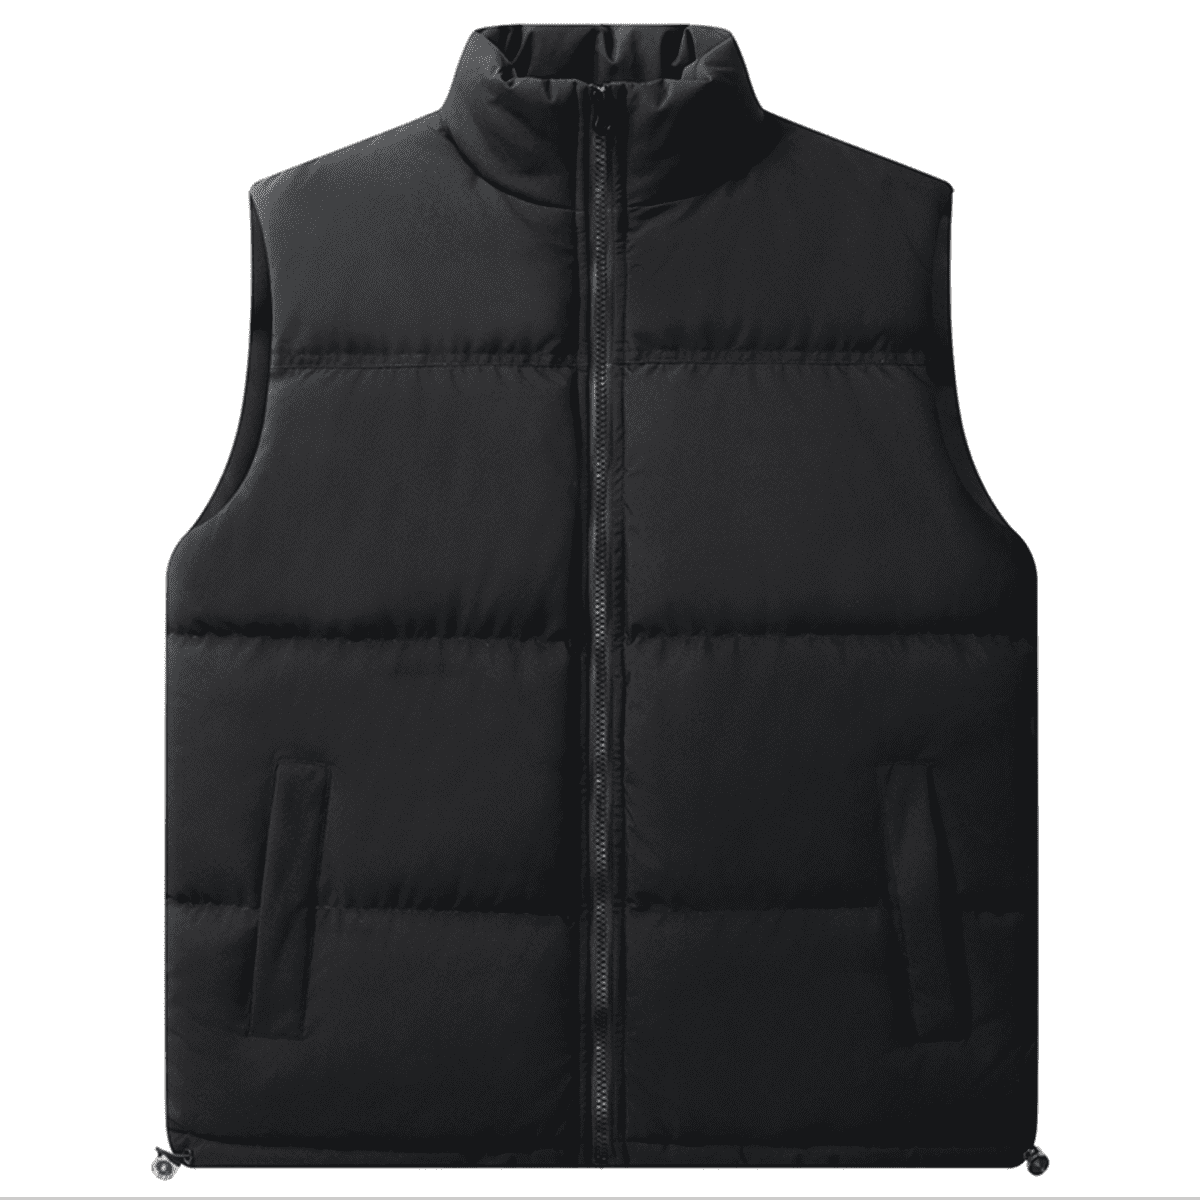 Vcansion Men's Full Zip Vest Jacket with Pockets Black 2XL - Walmart.com